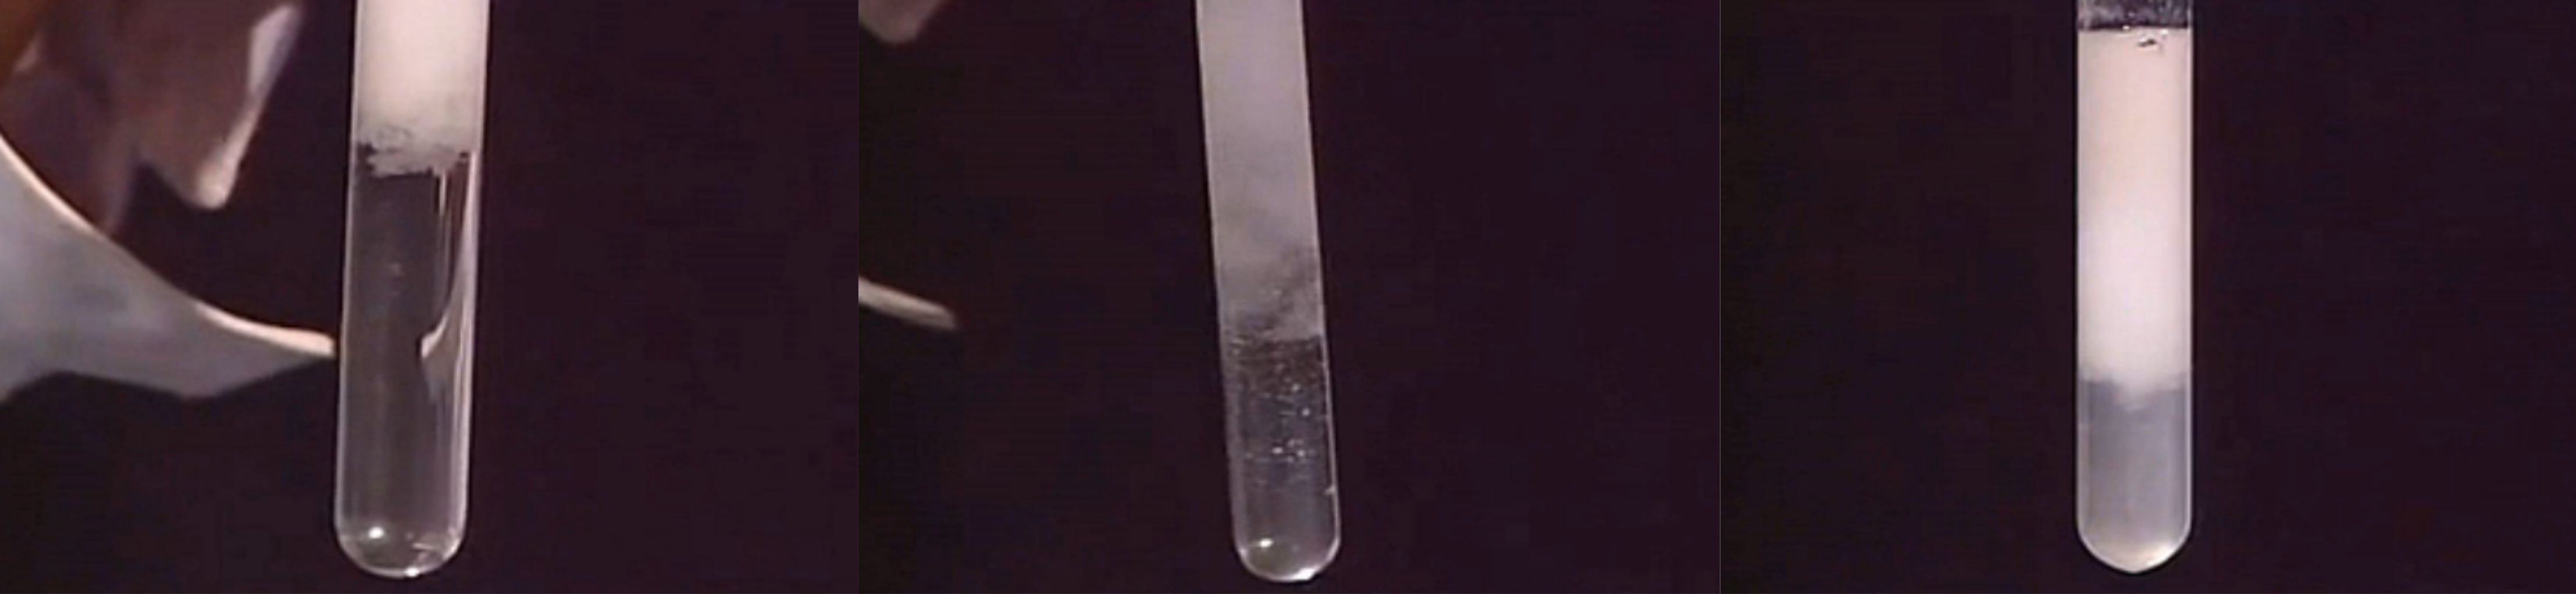 向NaOH溶液里滴加AlCl3溶液至过量,开始无沉淀，过一会儿产生白色沉淀且不溶解